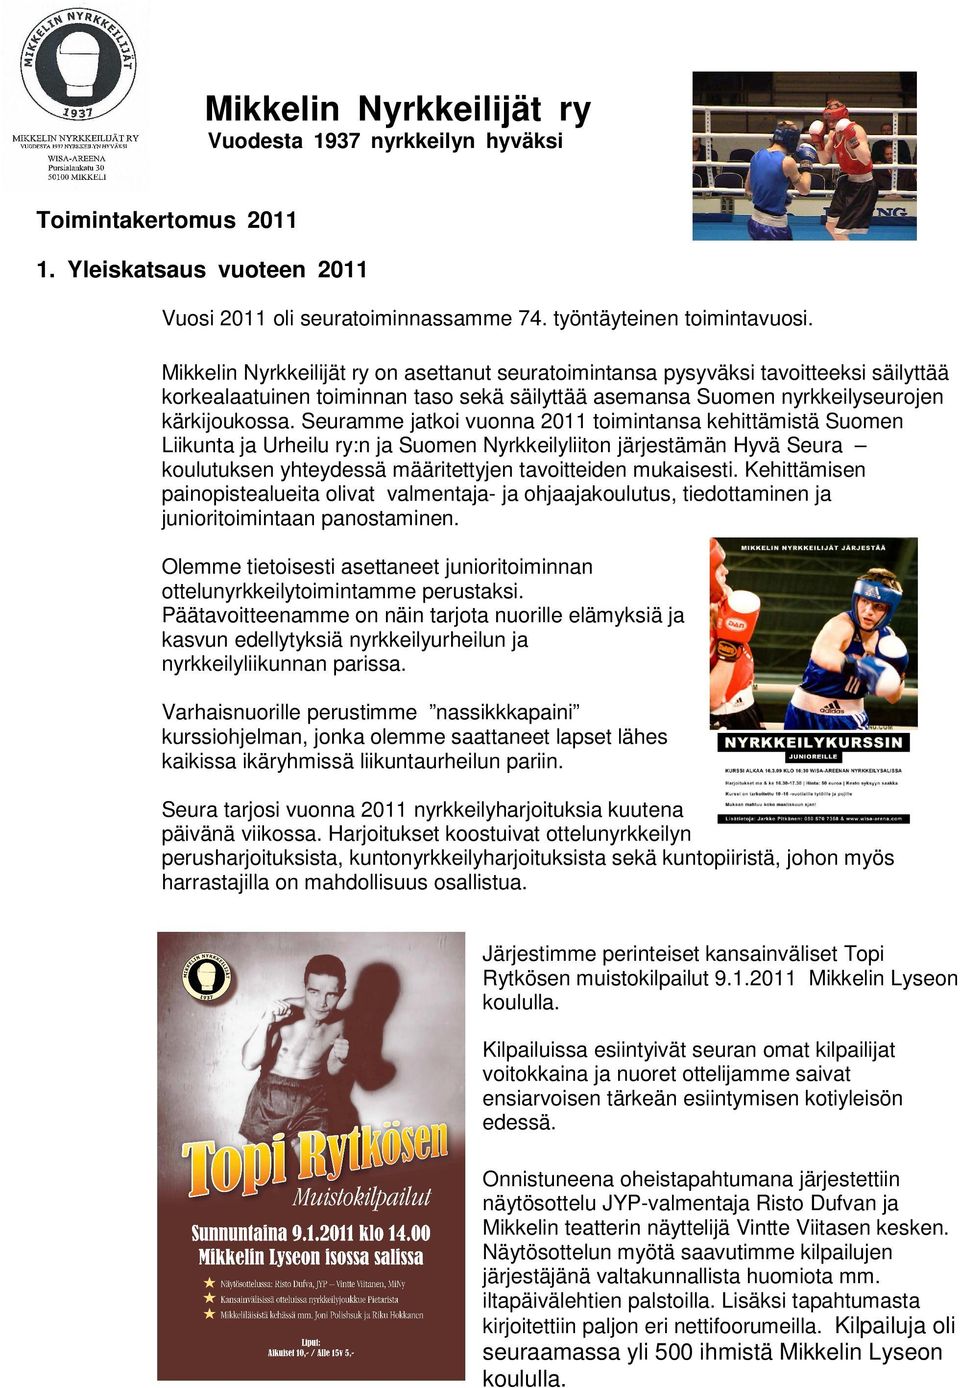 Seuramme jatkoi vuonna 2011 toimintansa kehittämistä Suomen Liikunta ja Urheilu ry:n ja Suomen Nyrkkeilyliiton järjestämän Hyvä Seura koulutuksen yhteydessä määritettyjen tavoitteiden mukaisesti.